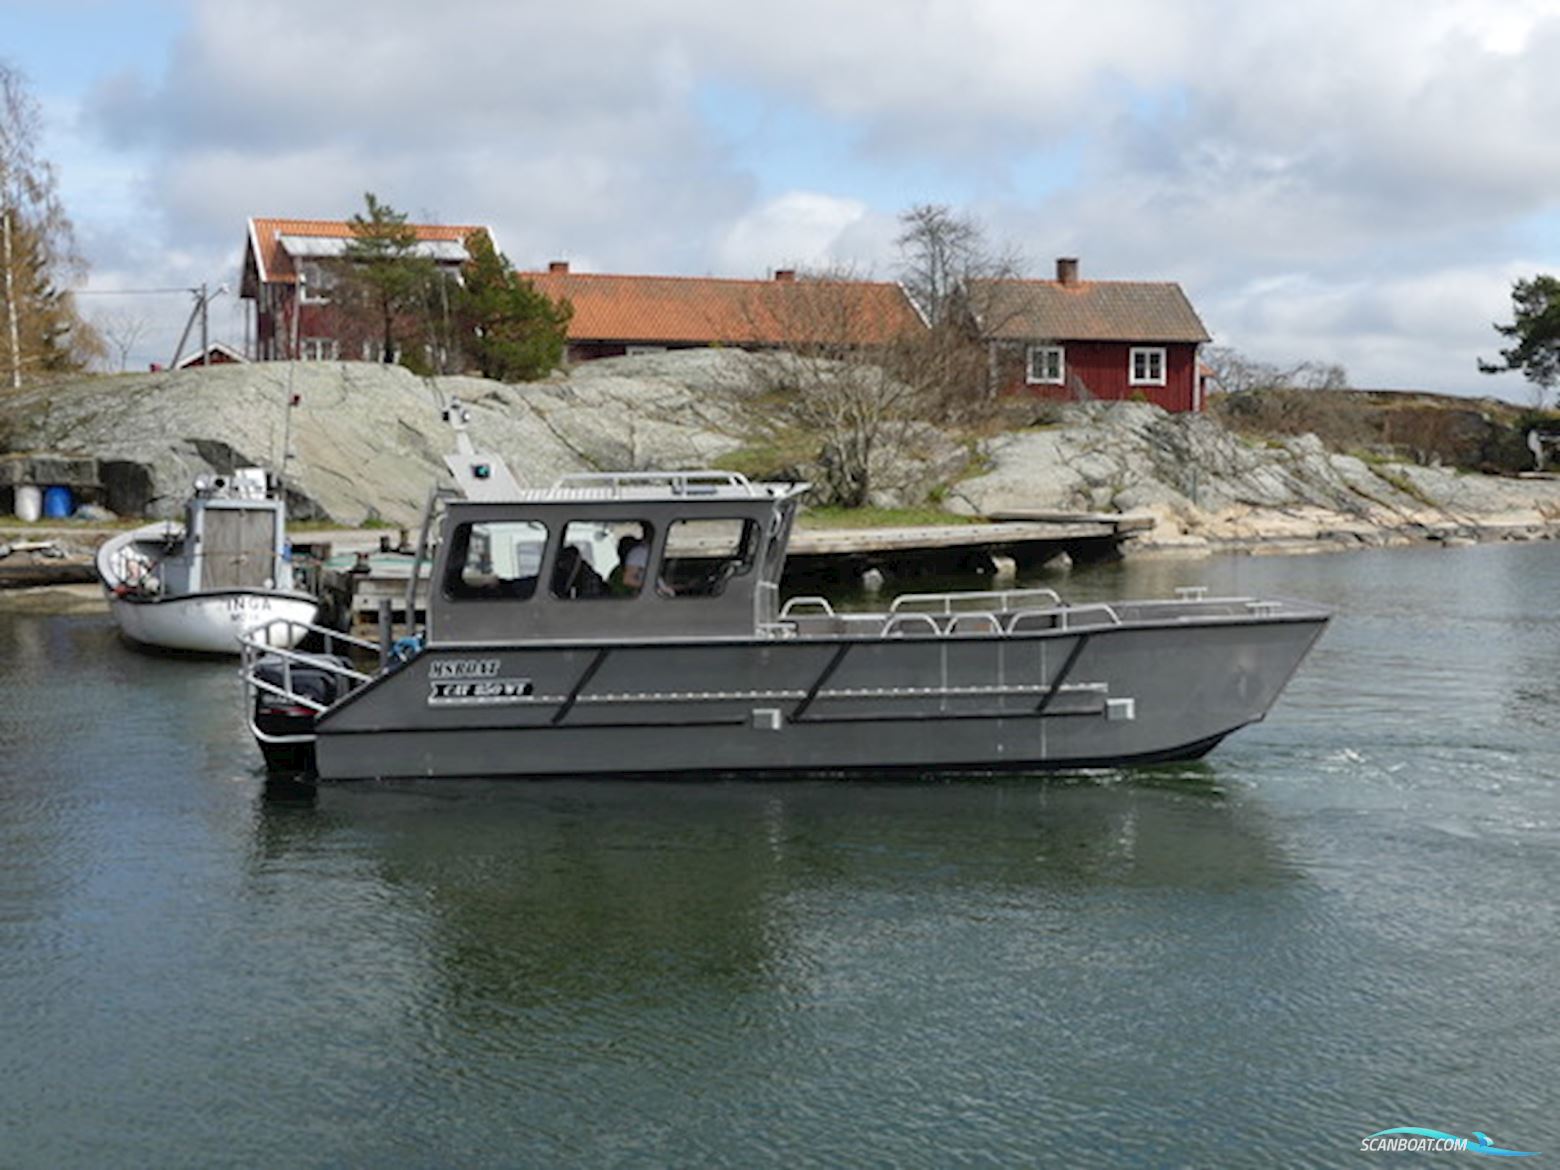 MS Cat850WT (Catamaran Hull) Motor boat 2022, Denmark